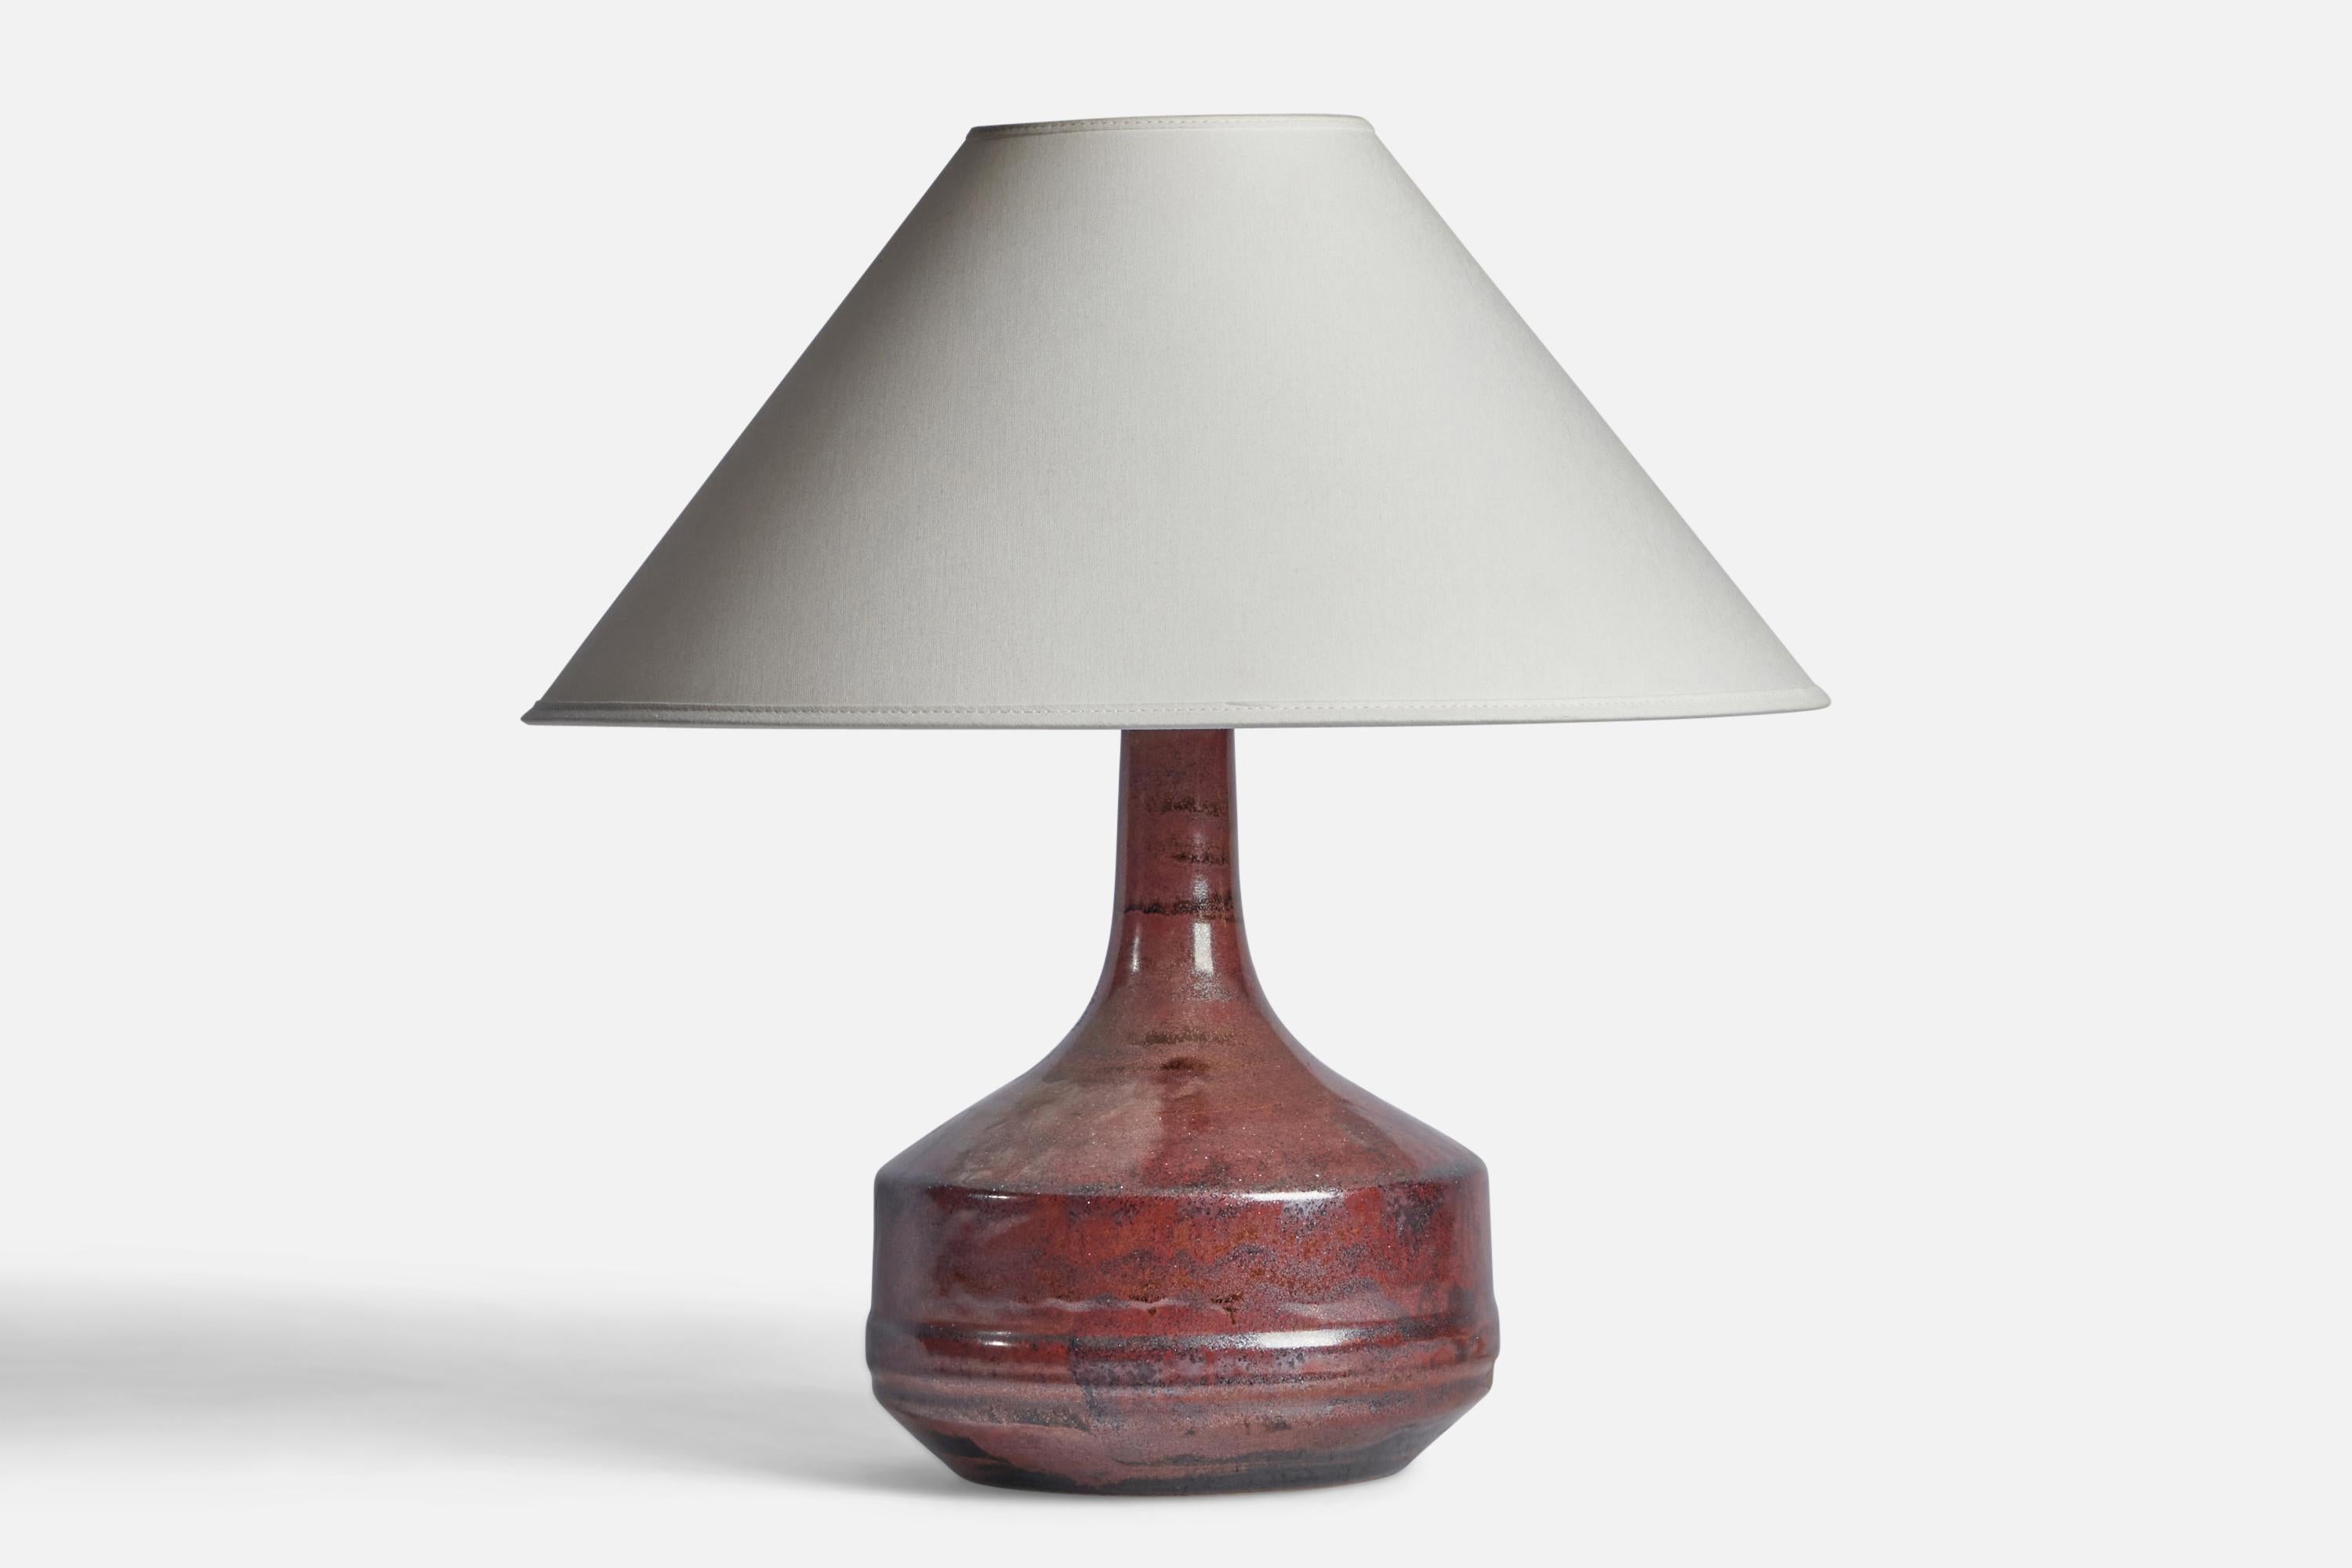 Tischlampe aus rot glasiertem Steingut, entworfen und hergestellt von Desiree, Dänemark, 1960er Jahre.

Abmessungen der Lampe (Zoll): 12